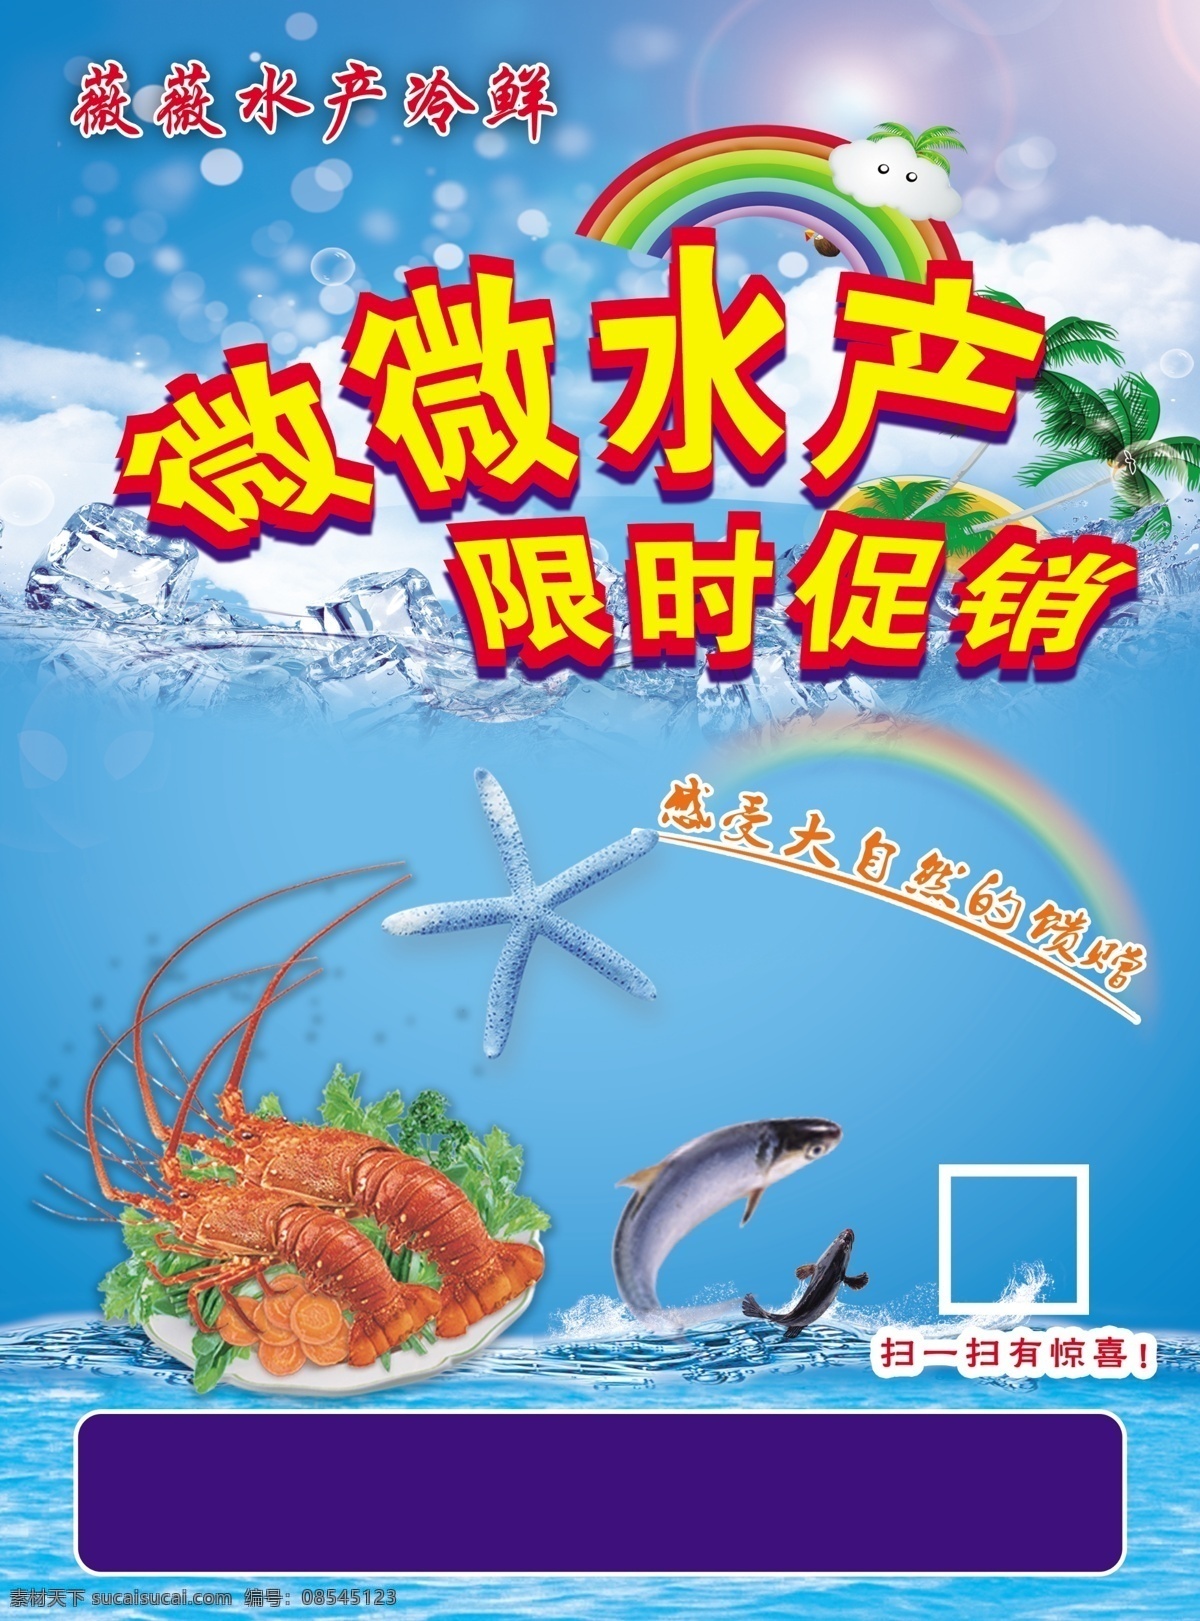 薇薇水产 生鲜超市海报 海鲜海报 水产品海报 三文鱼海报 海产品 分层